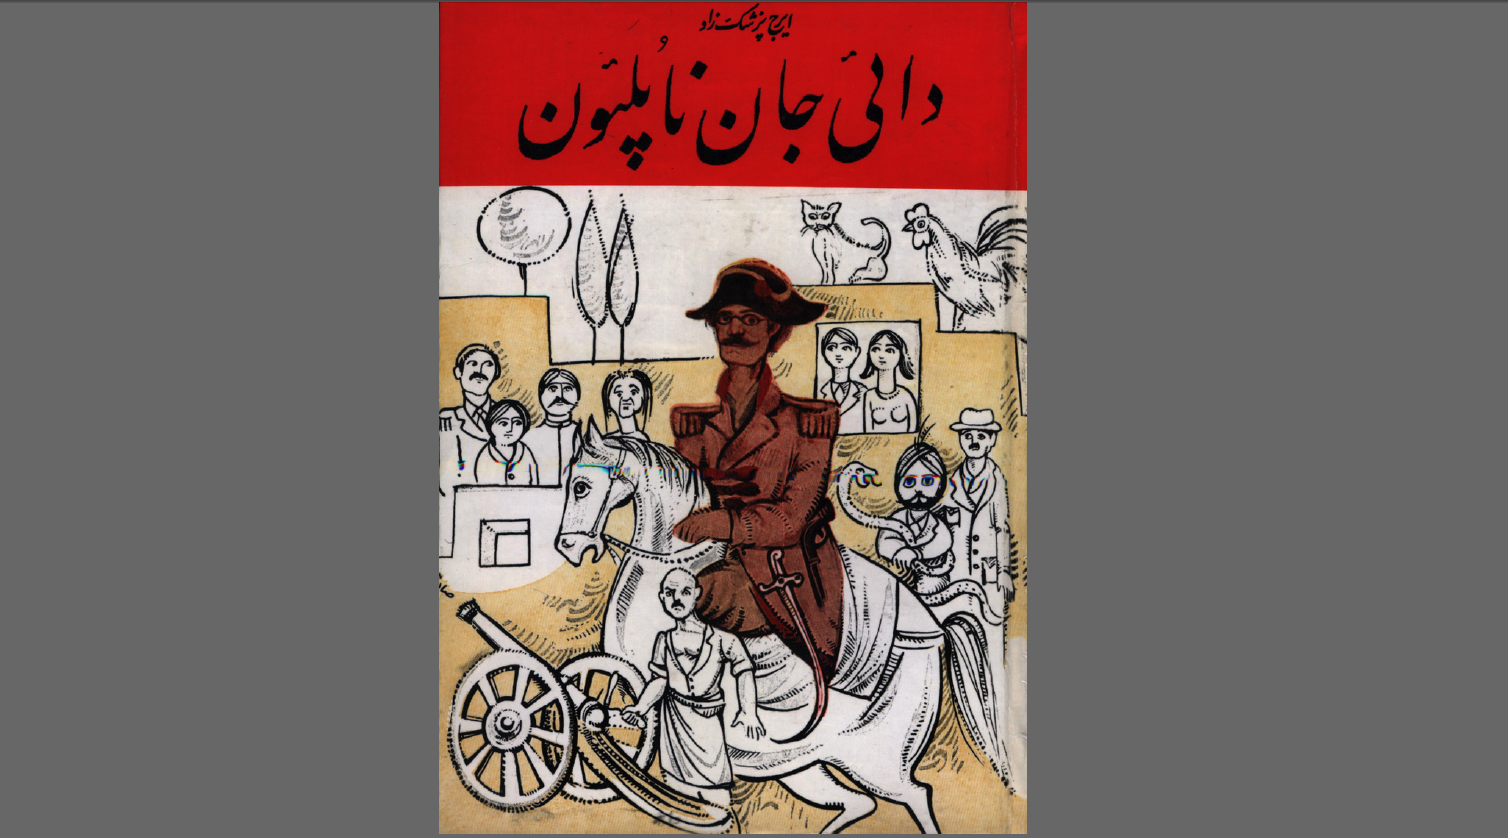 رمان دایی جان ناپلئون، یکی از آثار برگزیدهٔ صد سال اخیر ایران